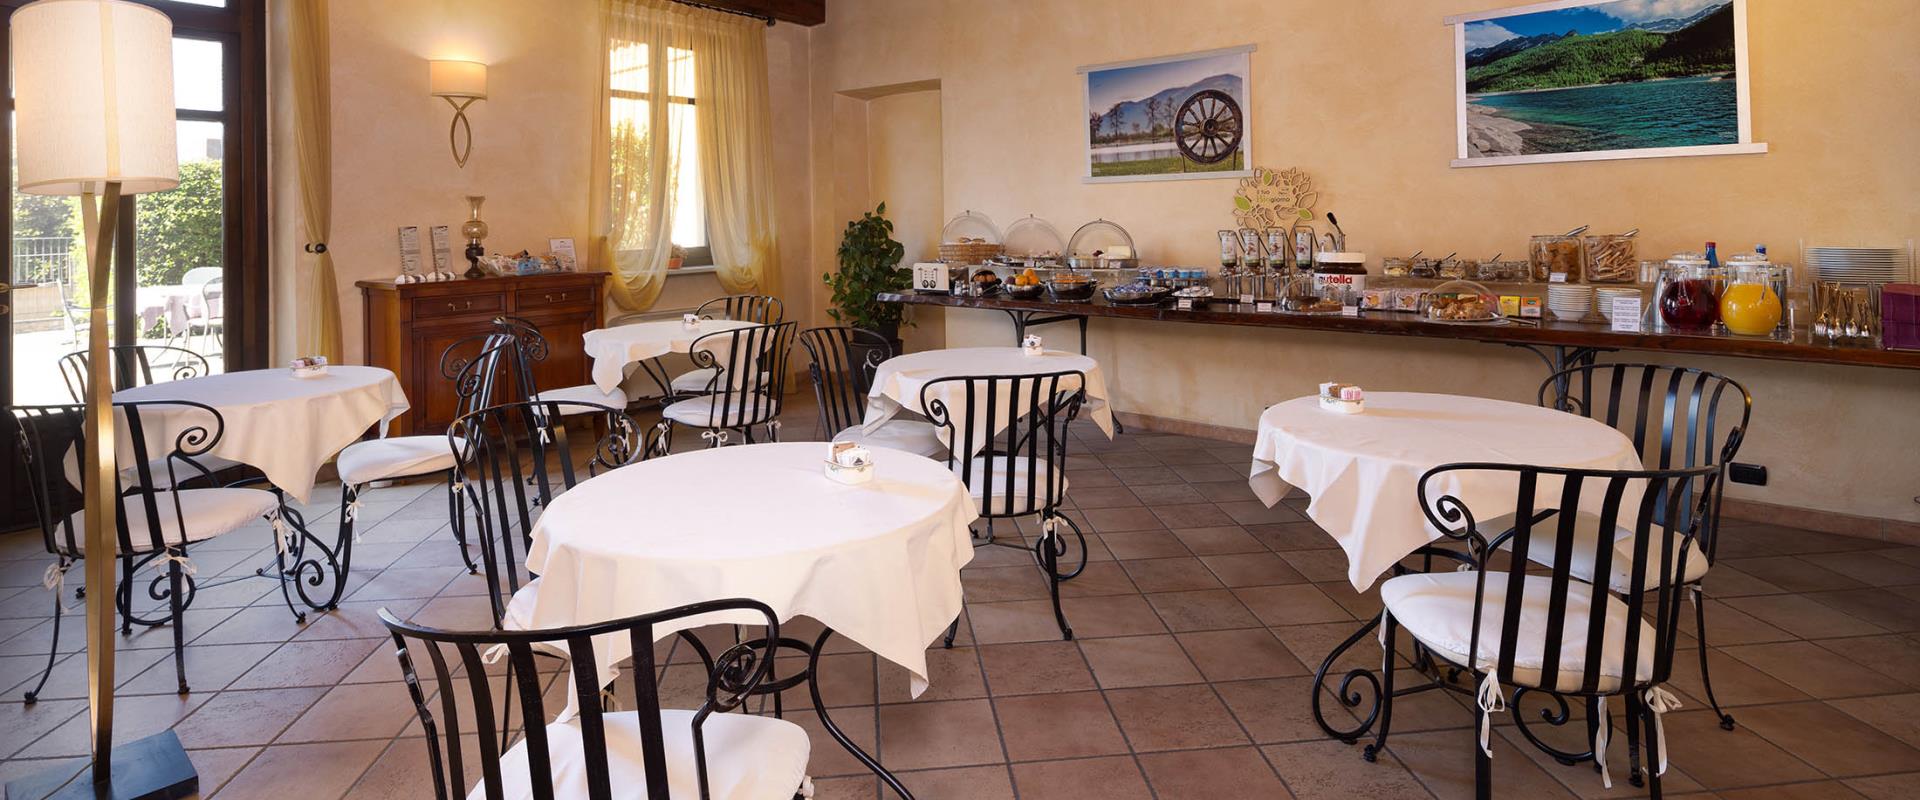 La colazione al BWP Hotel Le Rondini offre un ricco buffet dolce e salato, prodotti tipici locali, biologici, per intolleranze ed estratti di frutta e verdura.